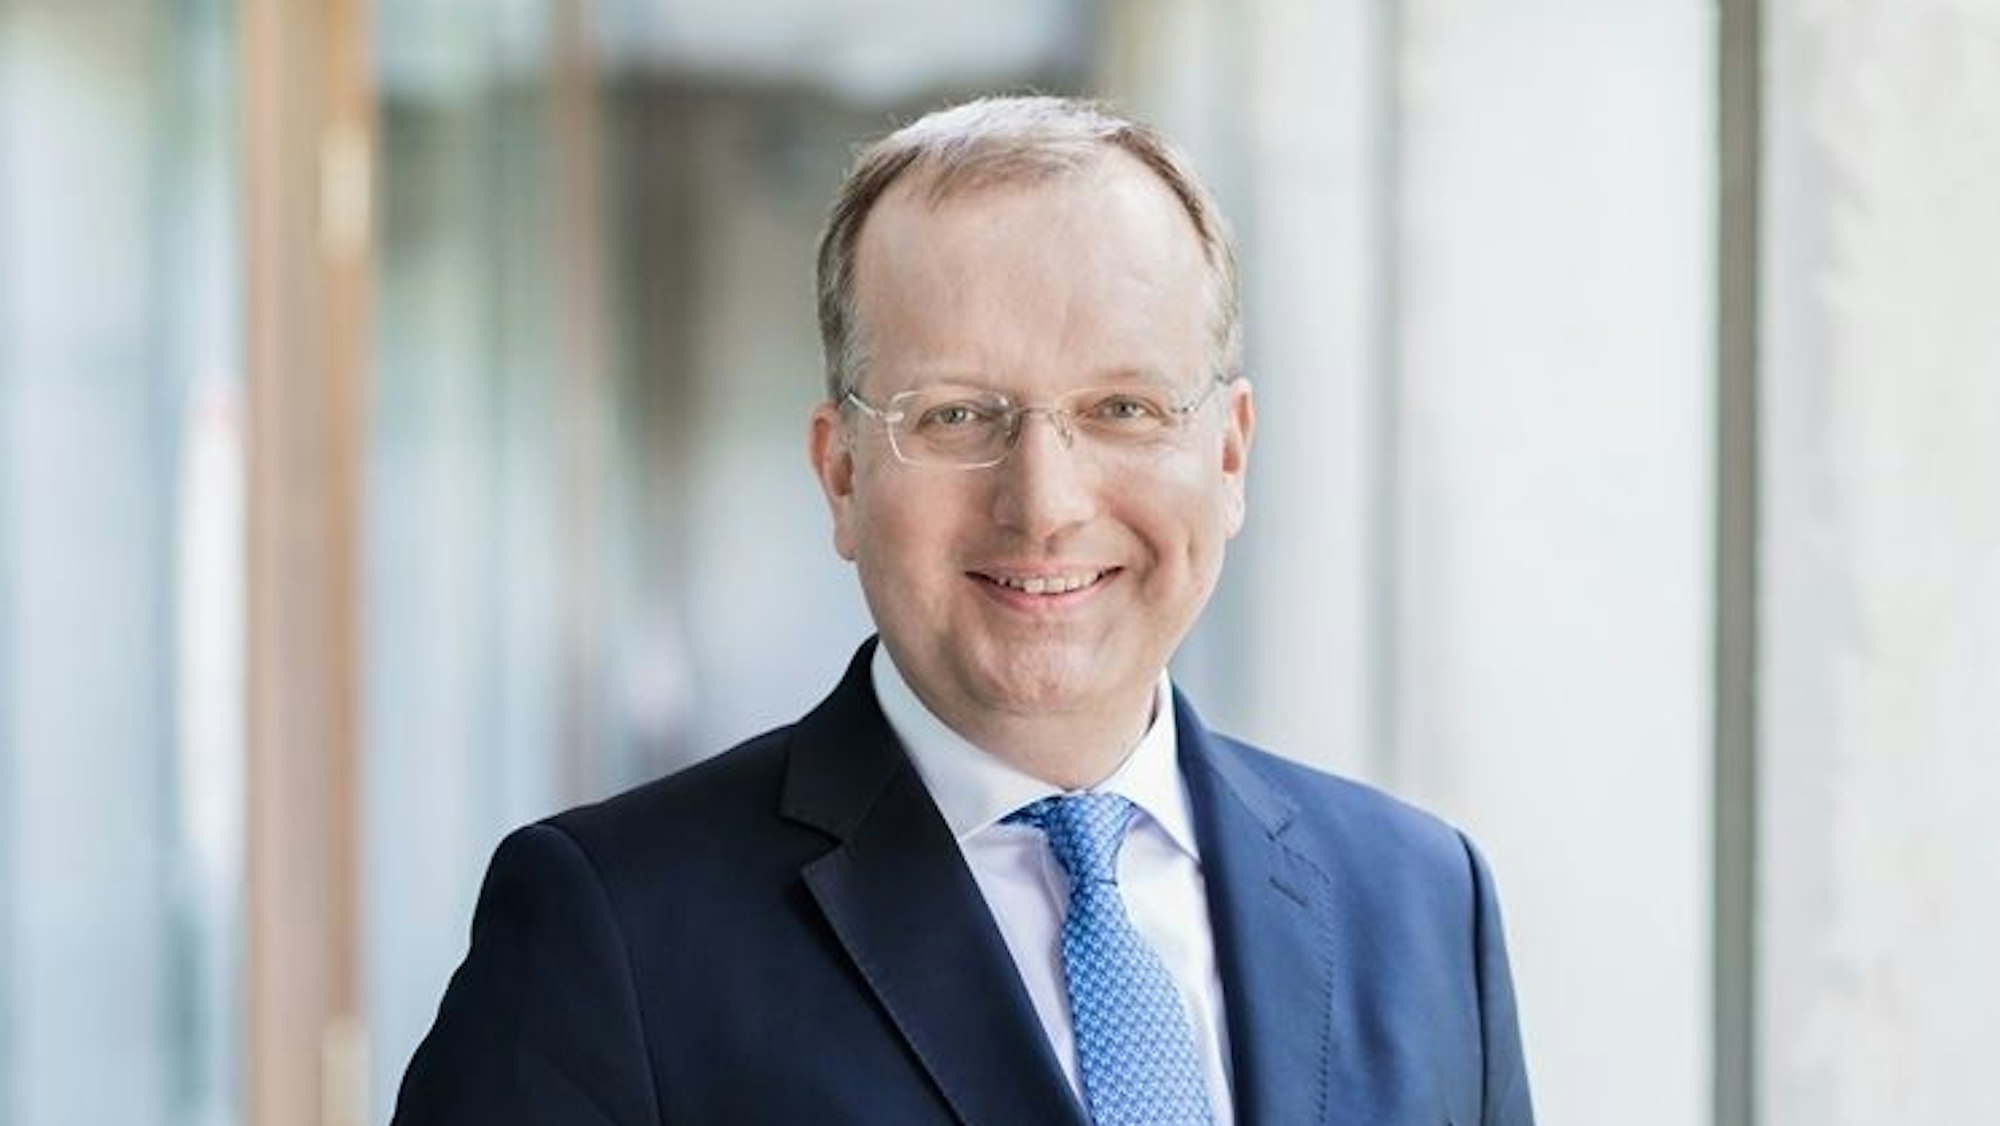 Ein Porträtfoto von Markus Ogorek. Der Rechtswissenschaftler trägt einen blauen Anzug, eine blaue Krawatte und eine Brille.